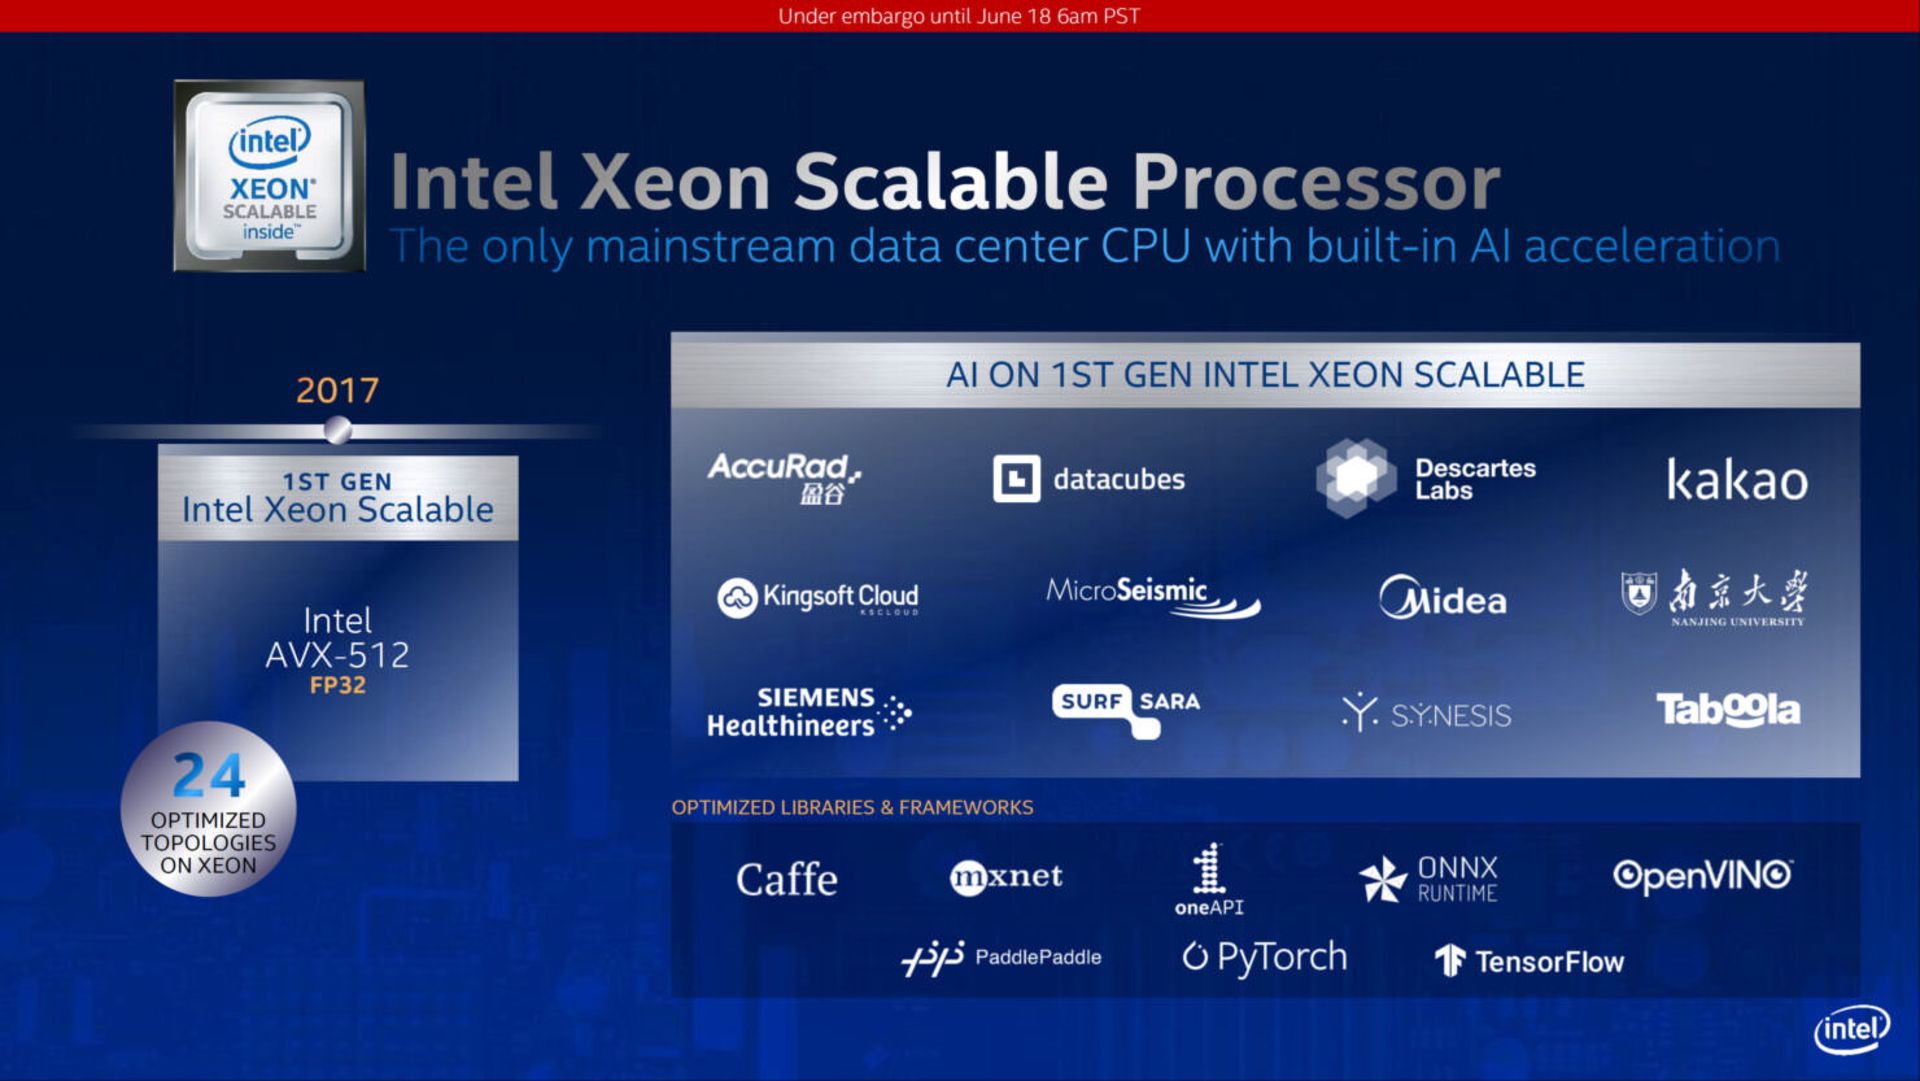 مرجع متخصصين ايران پردازنده هاي نسل 3 اينتل زئون كوپر ليك SP / intel scalable 3rd gen xeon cooper lake CPU